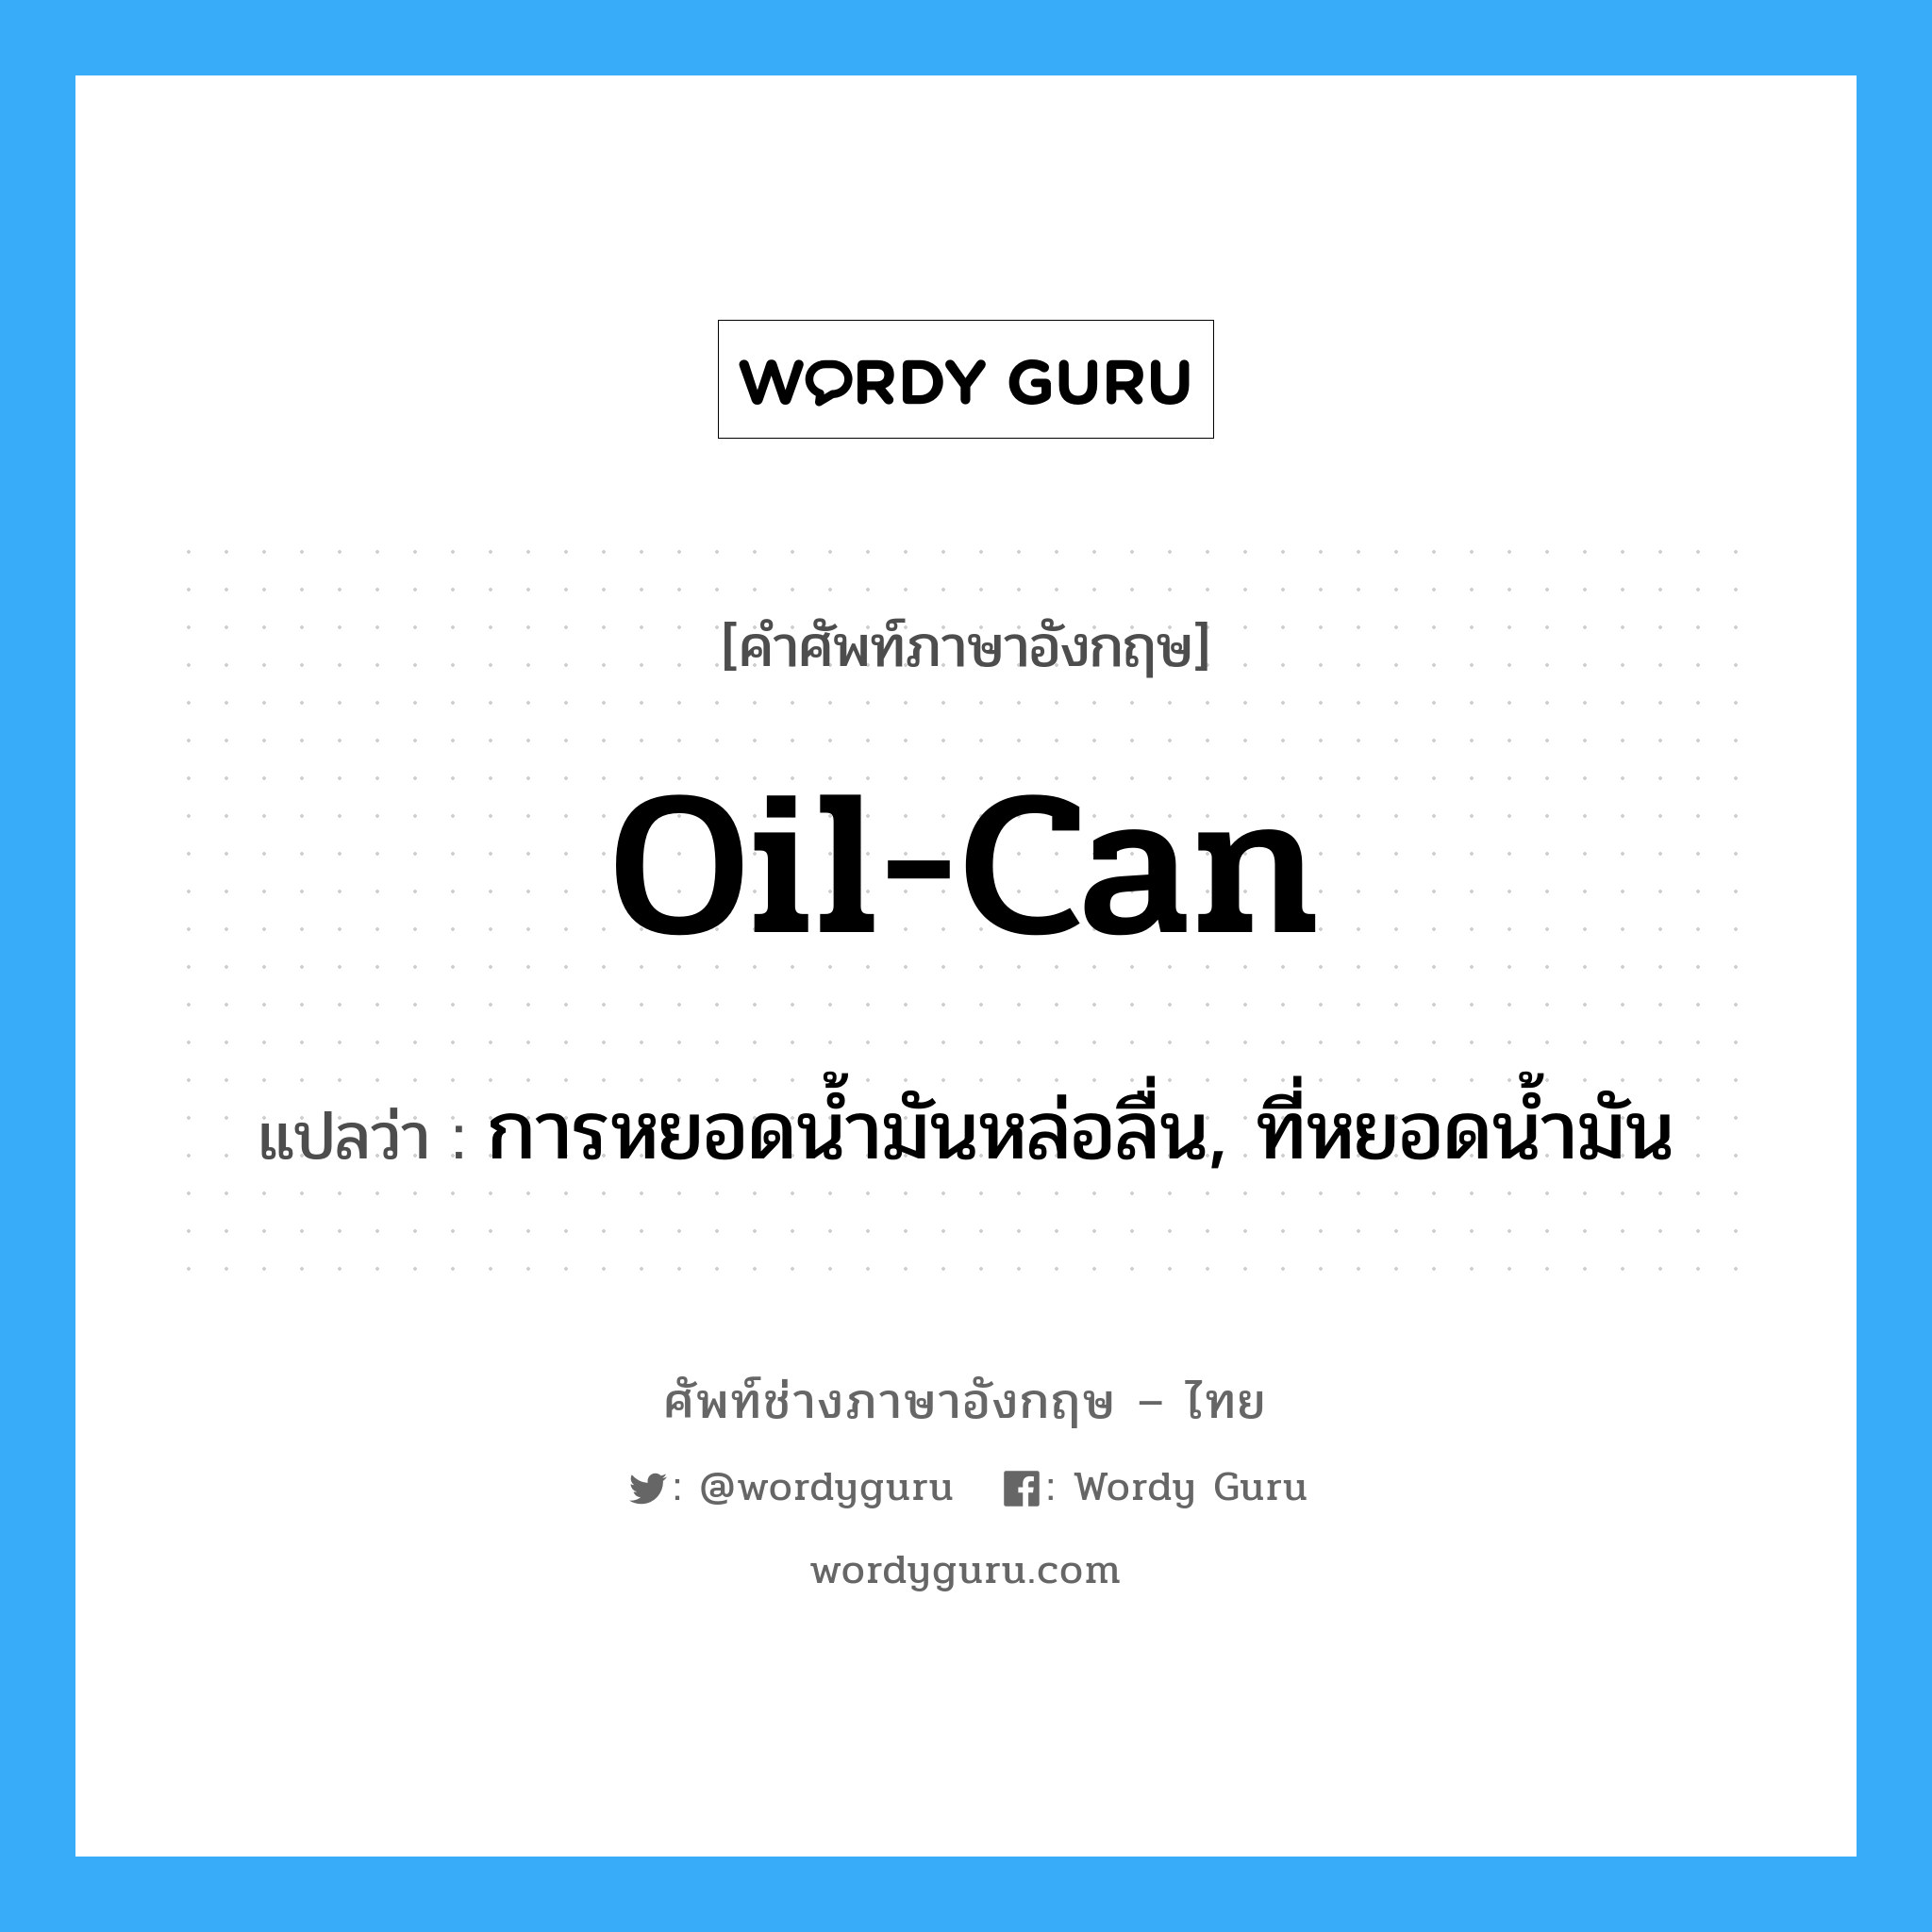 oil-can แปลว่า?, คำศัพท์ช่างภาษาอังกฤษ - ไทย oil-can คำศัพท์ภาษาอังกฤษ oil-can แปลว่า การหยอดน้ำมันหล่อลื่น, ที่หยอดน้ำมัน